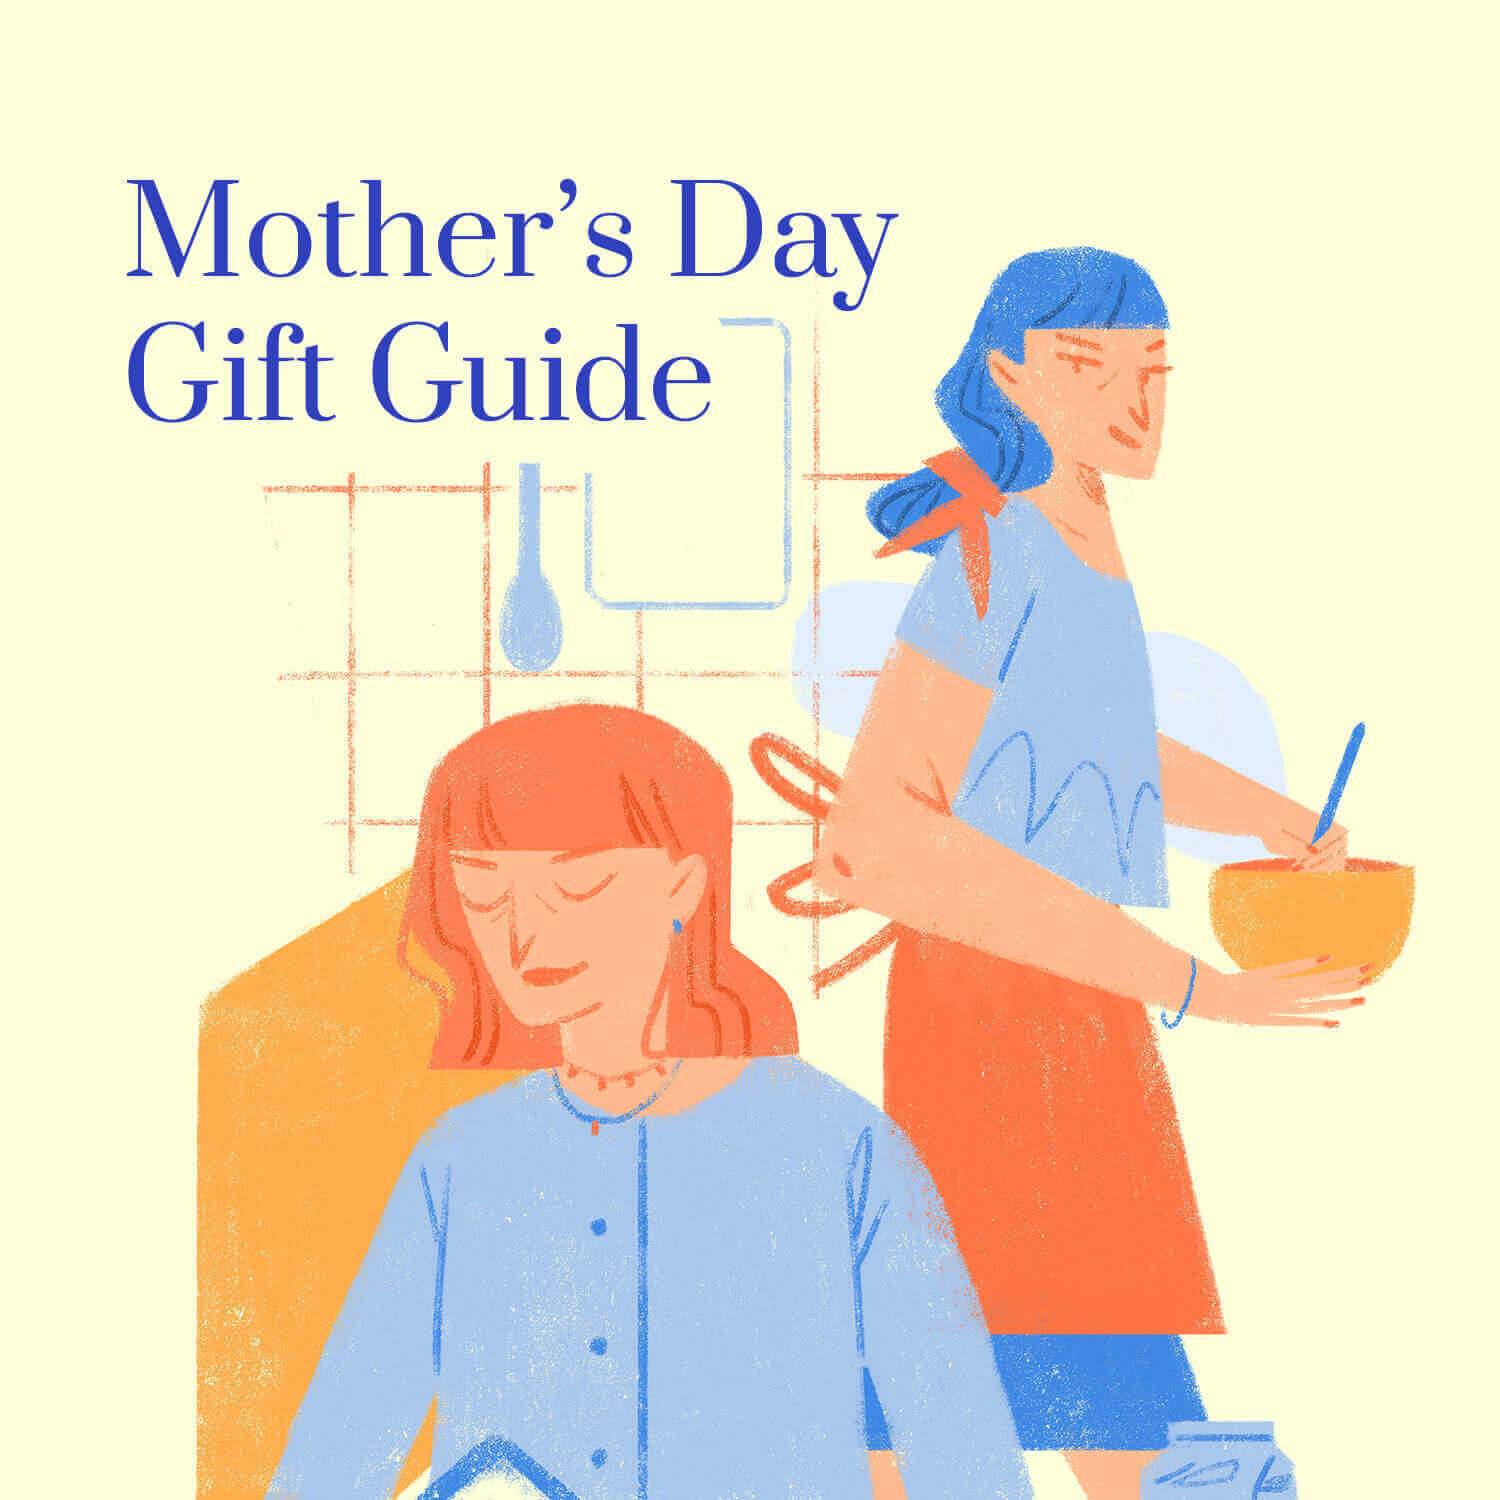 8 unique gift ideas for mom or grandma